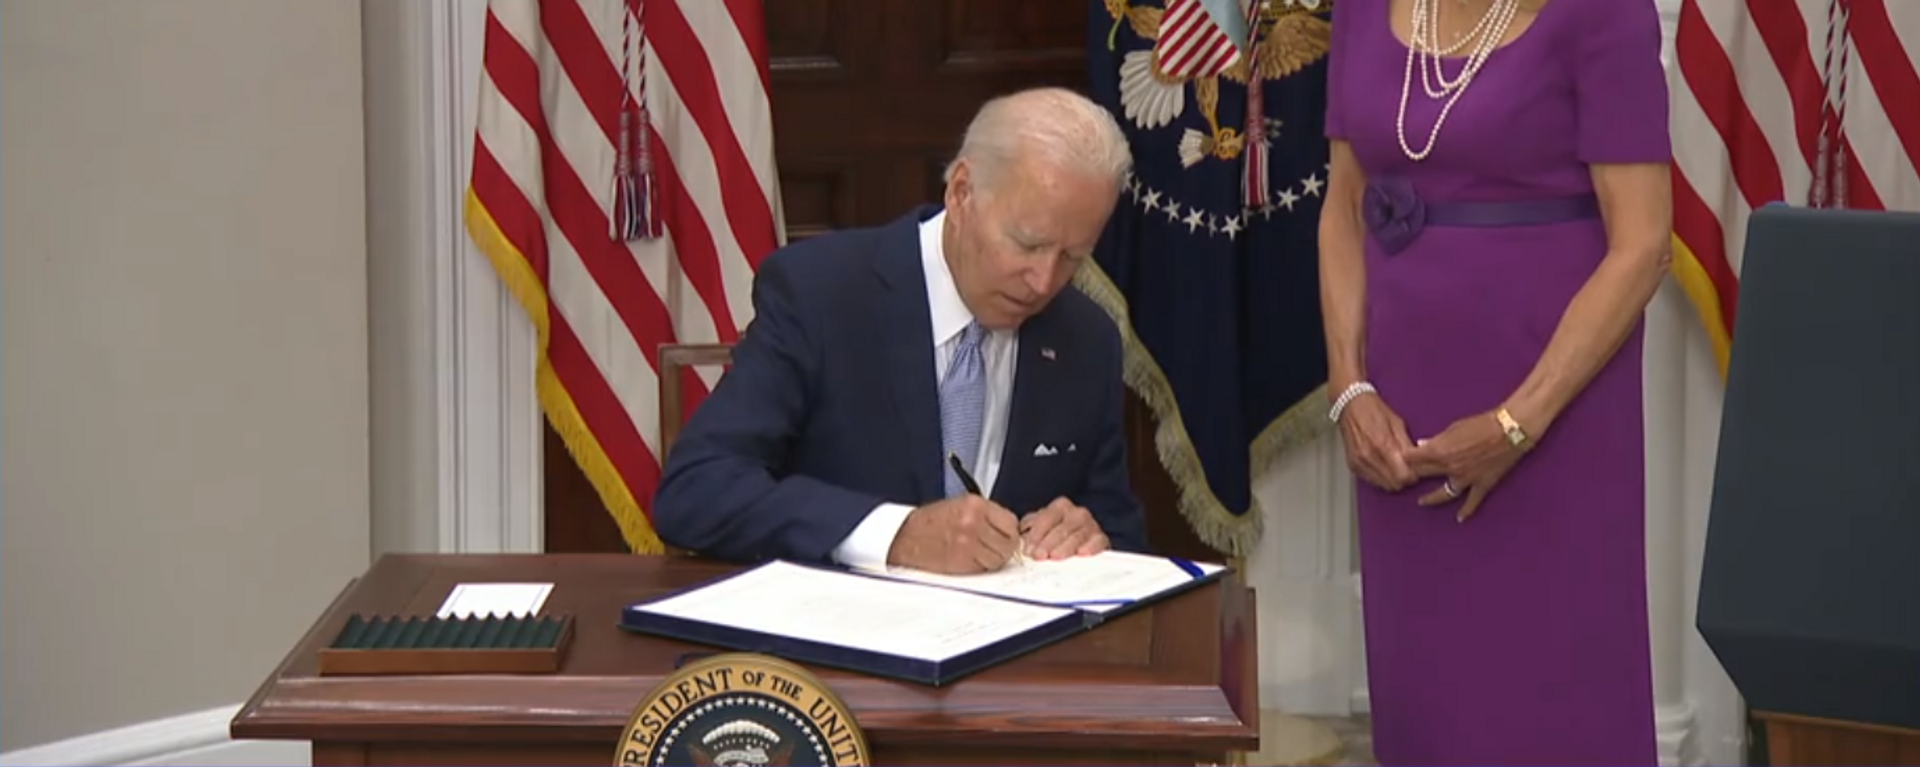 Joe Biden, presidente de EEUU, firma la Ley sobre Comunidades Seguras en Washington (EEUU), el 25 de junio del 2022 - Sputnik Mundo, 1920, 25.06.2022